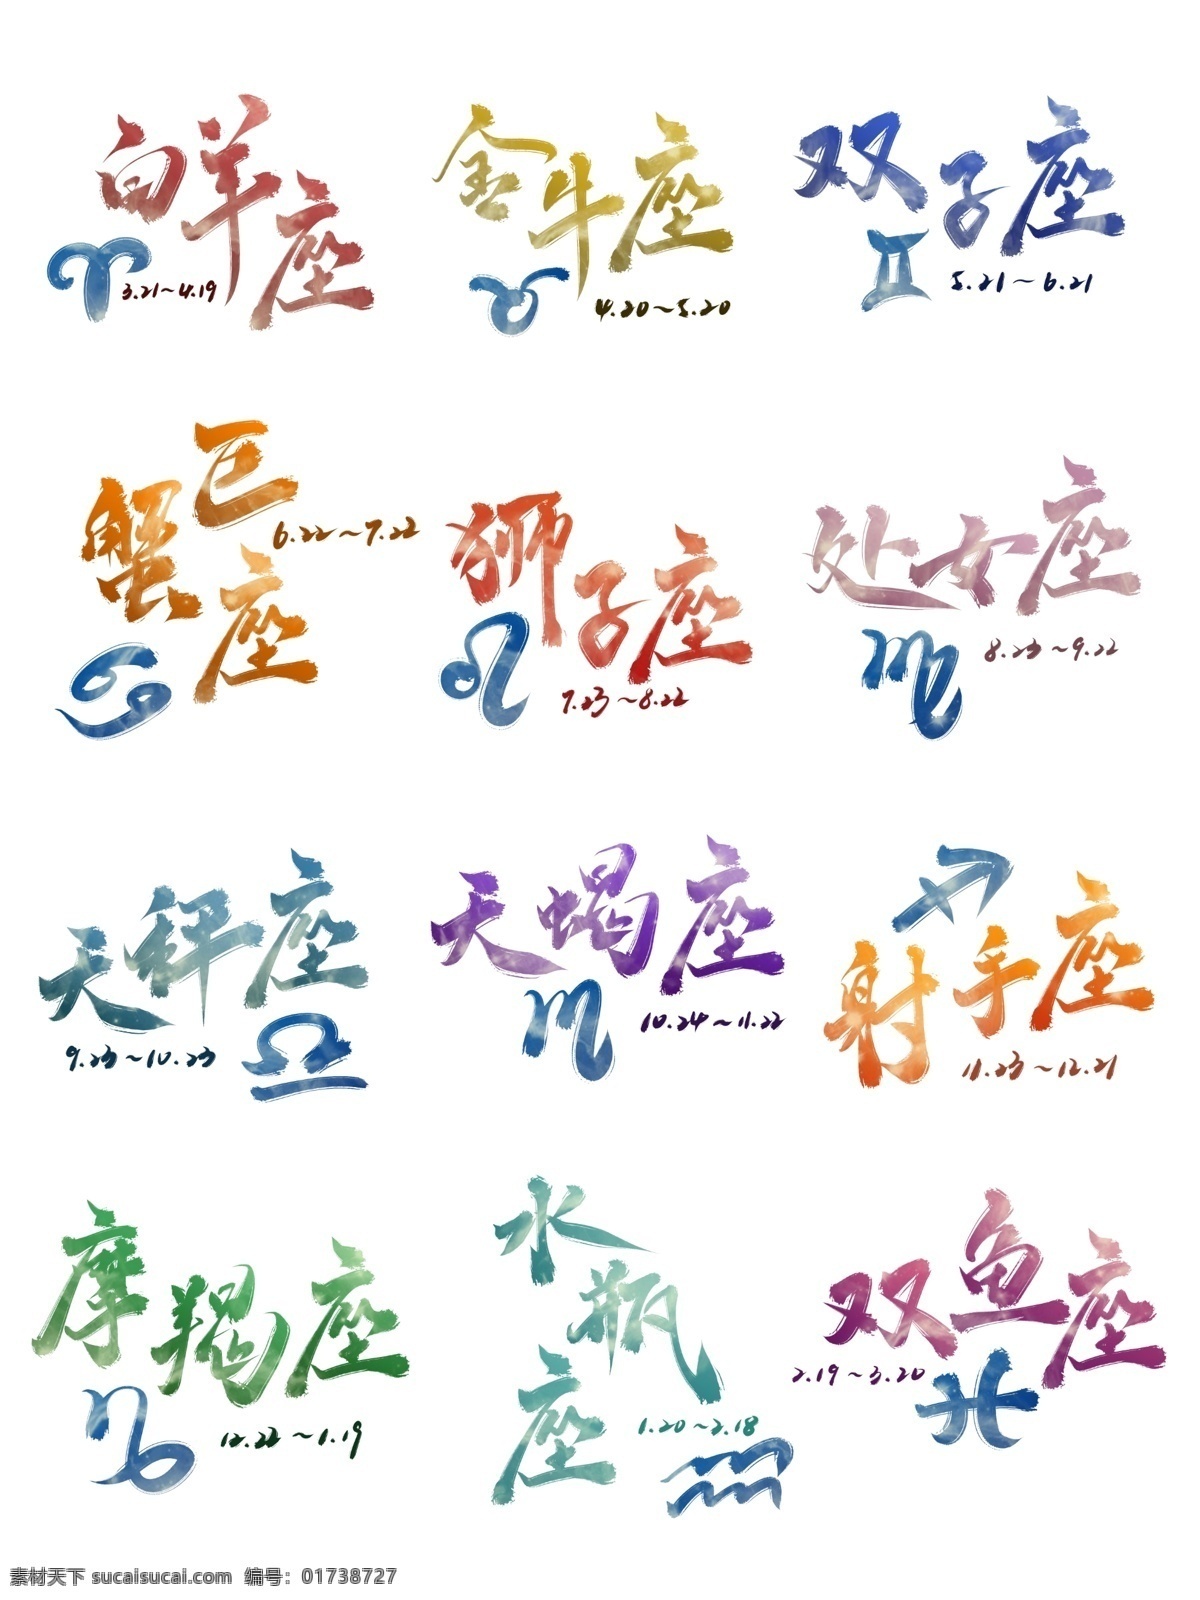 十二星座 艺术 字 套 图 图案 带 日期 书法 中国 风 中国风 分层 字体设计 套图 星座 艺术字 字体素材 透明 免抠 手写